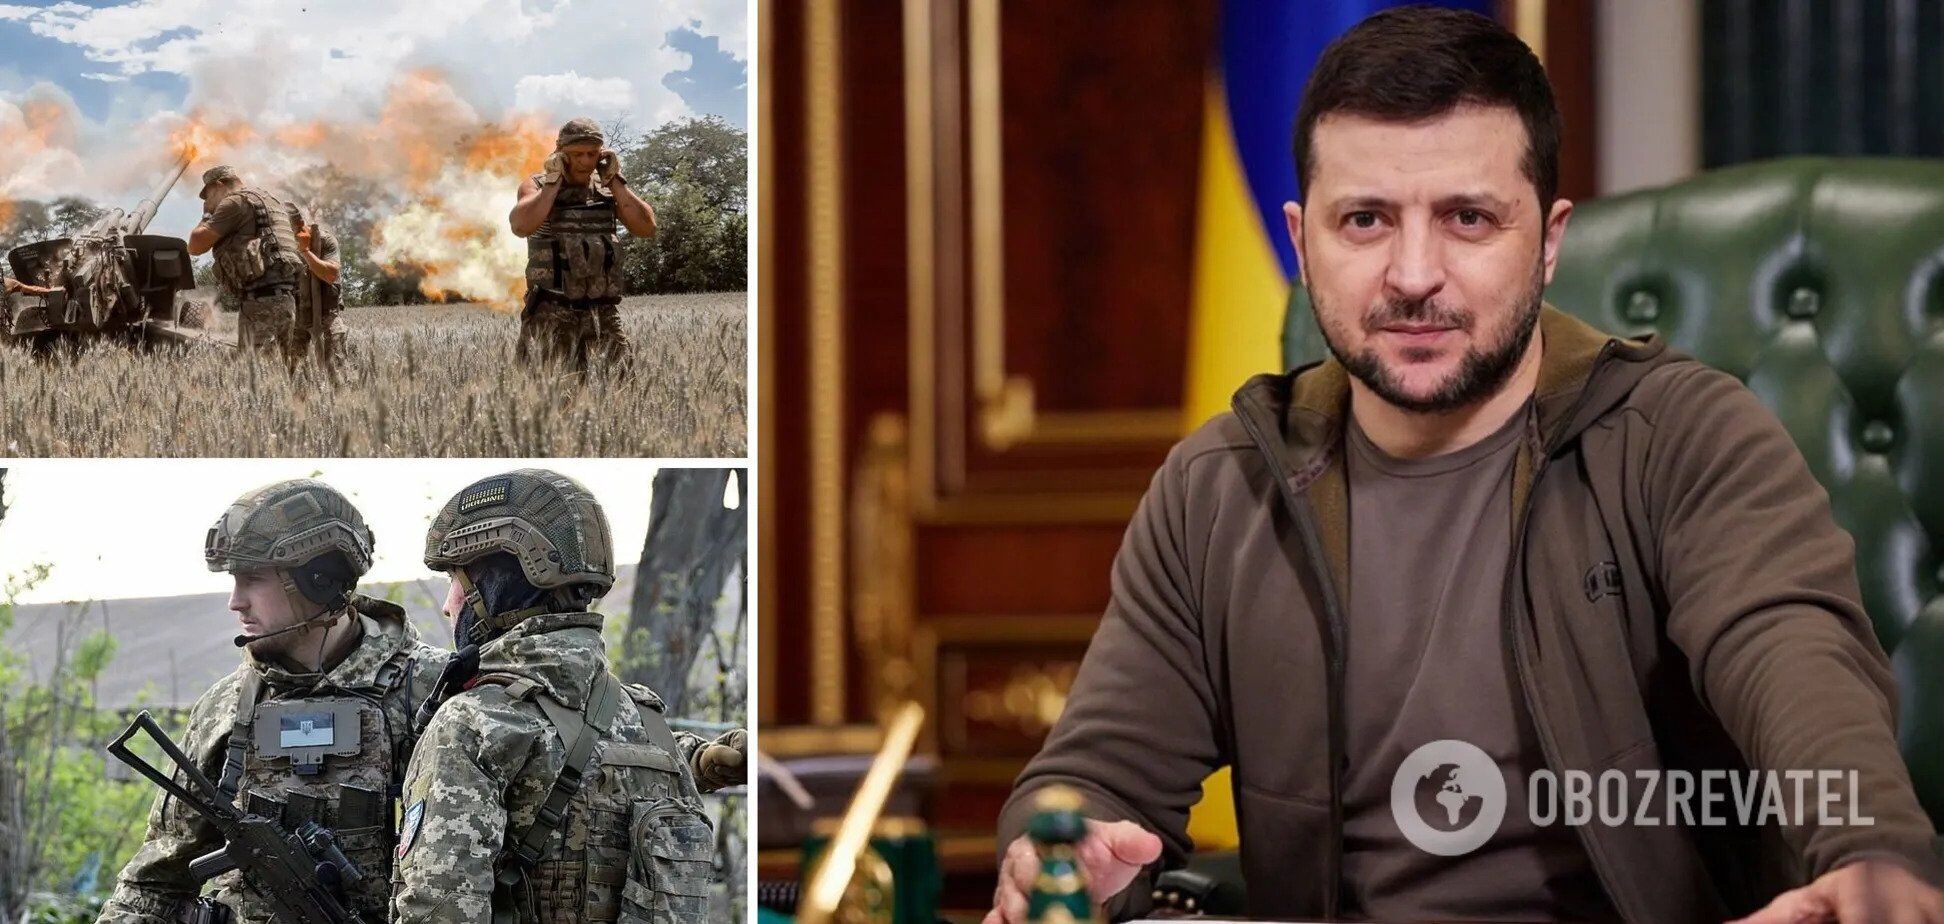 "За каждое завтра нужно бороться, нас ждет победа": Зеленский обратился к украинцам в годовщину полномасштабной войны. Видео